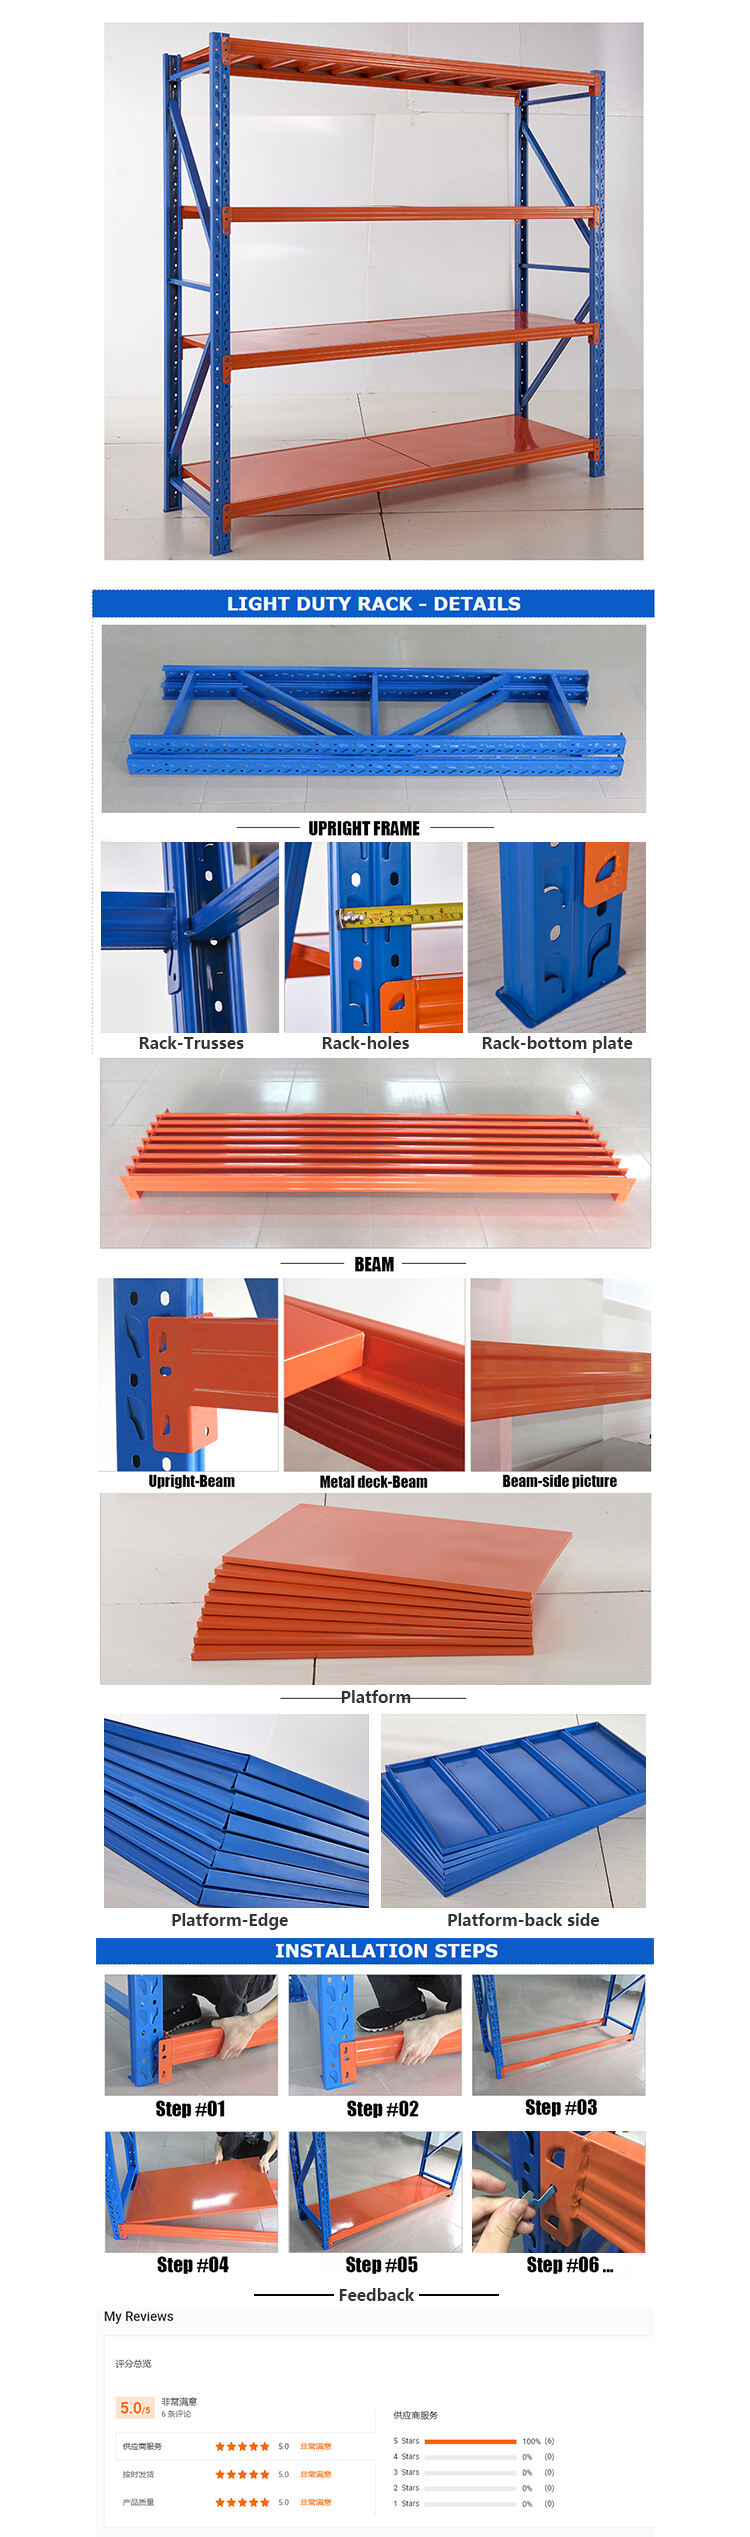 رف فولاذي قابل للتعديل بسعر المصنع للاستخدام المنزلي تفاصيل أنظمة رف تخزين الصفائح المعدنية الخفيفة